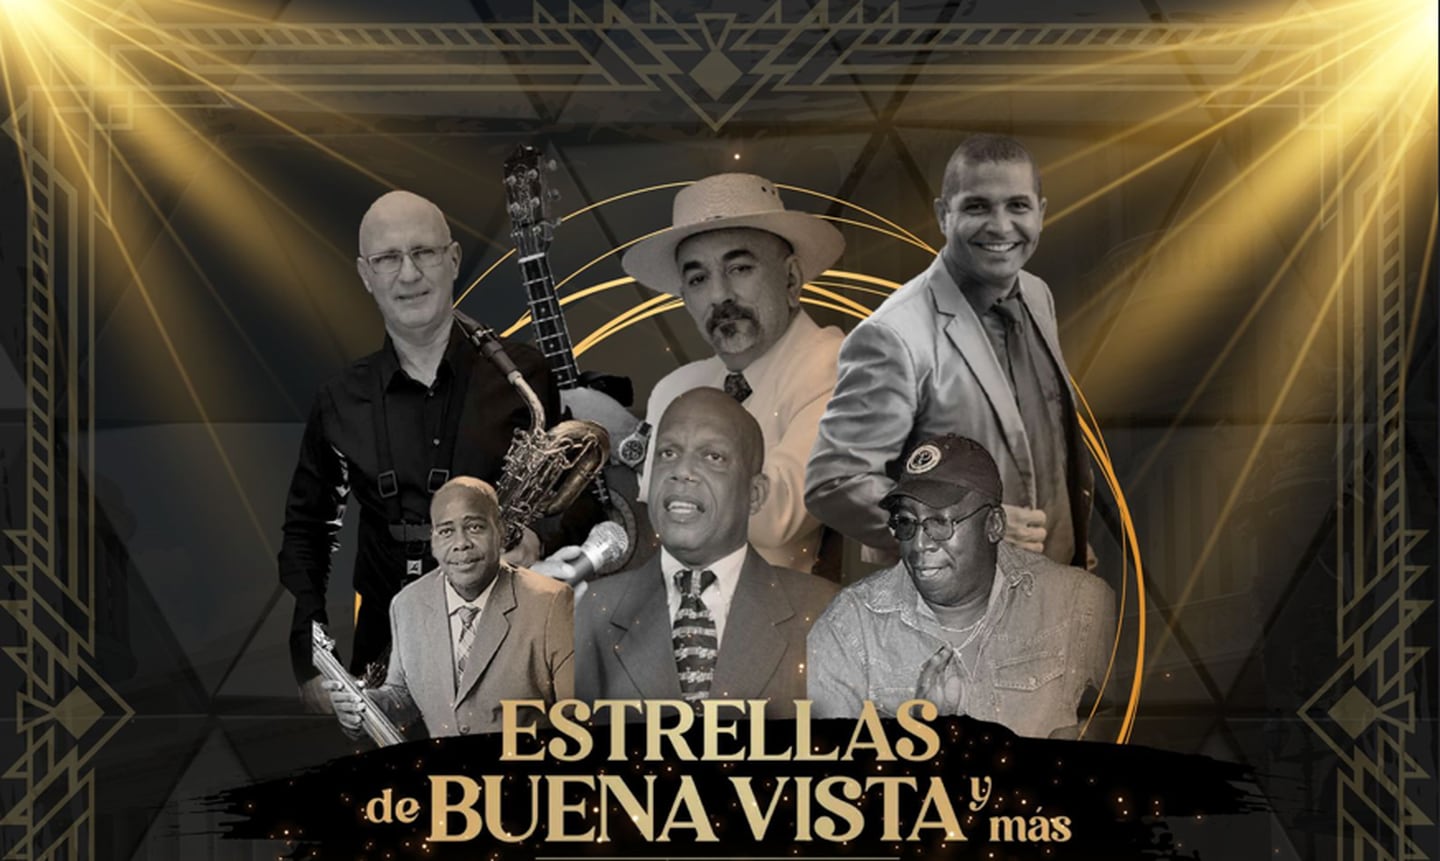 La salsa y el son cubano sonarán fuerte en Costa Rica con el concierto que darán miembros originales de la Buena Vista Social Club.